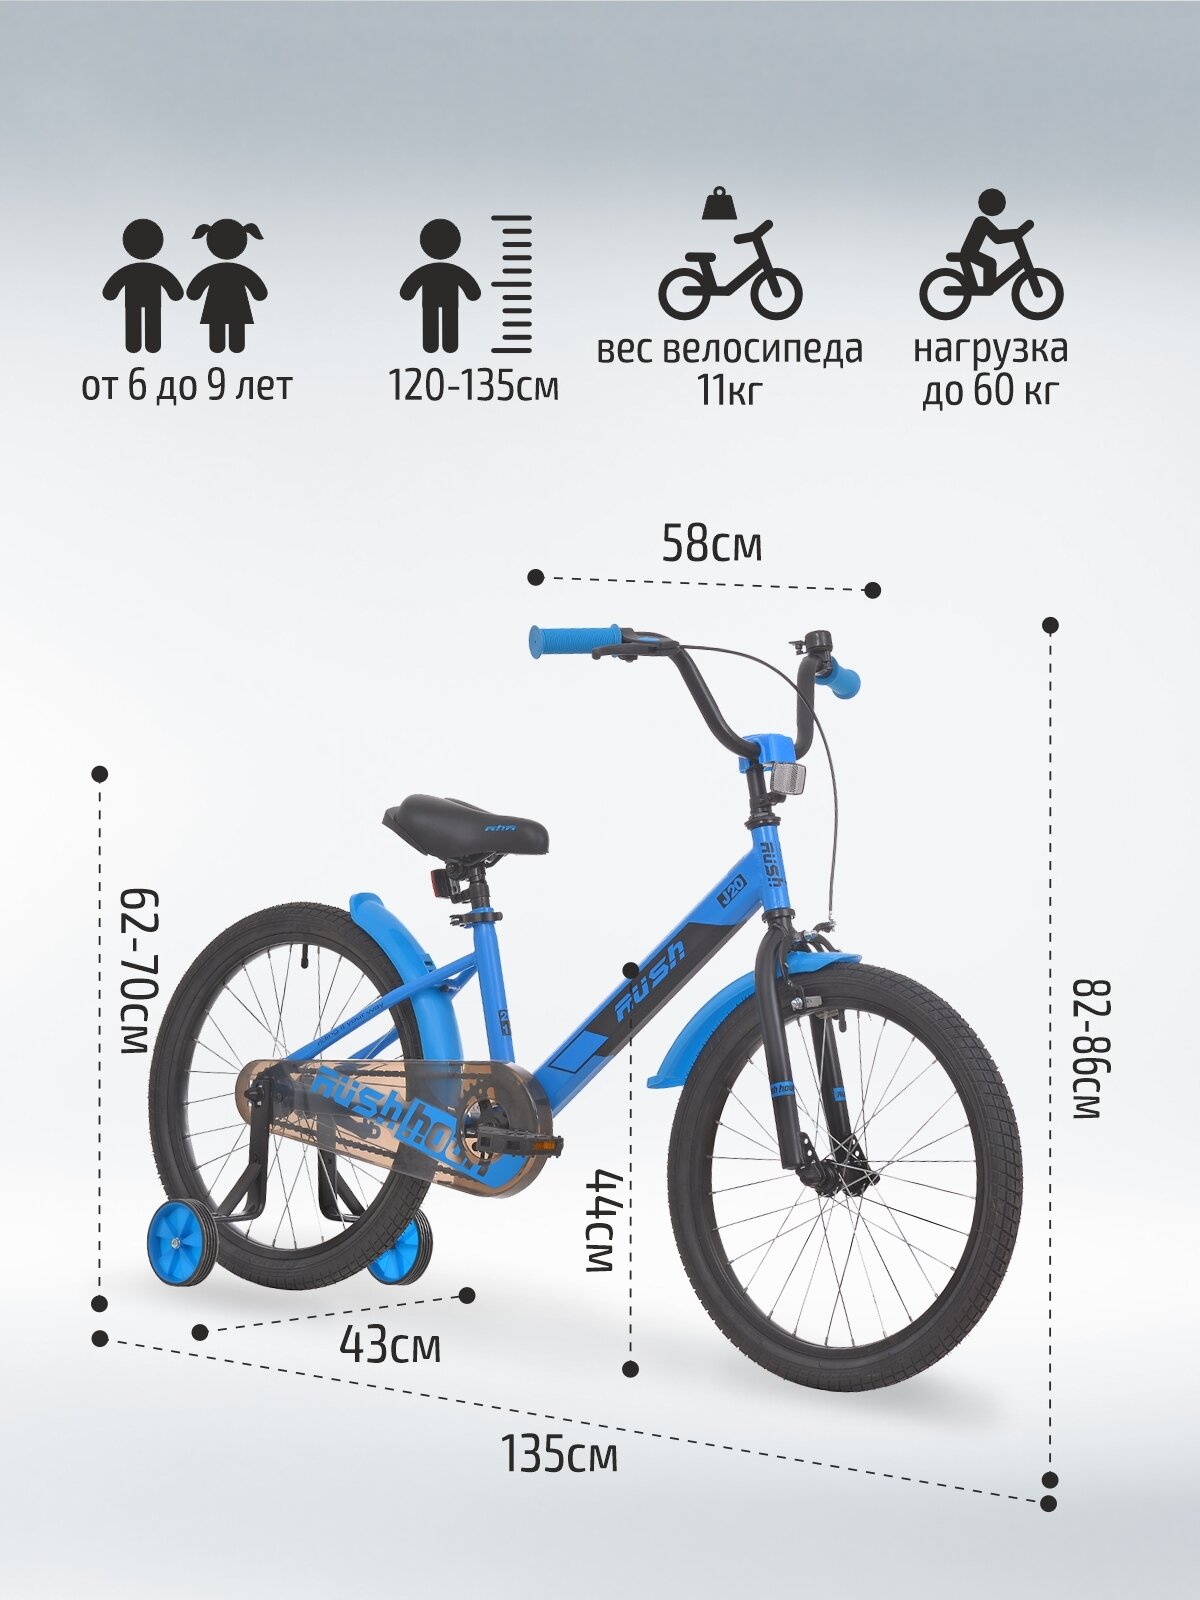 Велосипед двухколесный детский 20" дюймов RUSH HOUR J20 рост 120-135 см синий. Для девочки, для мальчика 6 лет, 7 лет, 8 лет, для дошкольников, велосипед для школьников, велик детский, раш